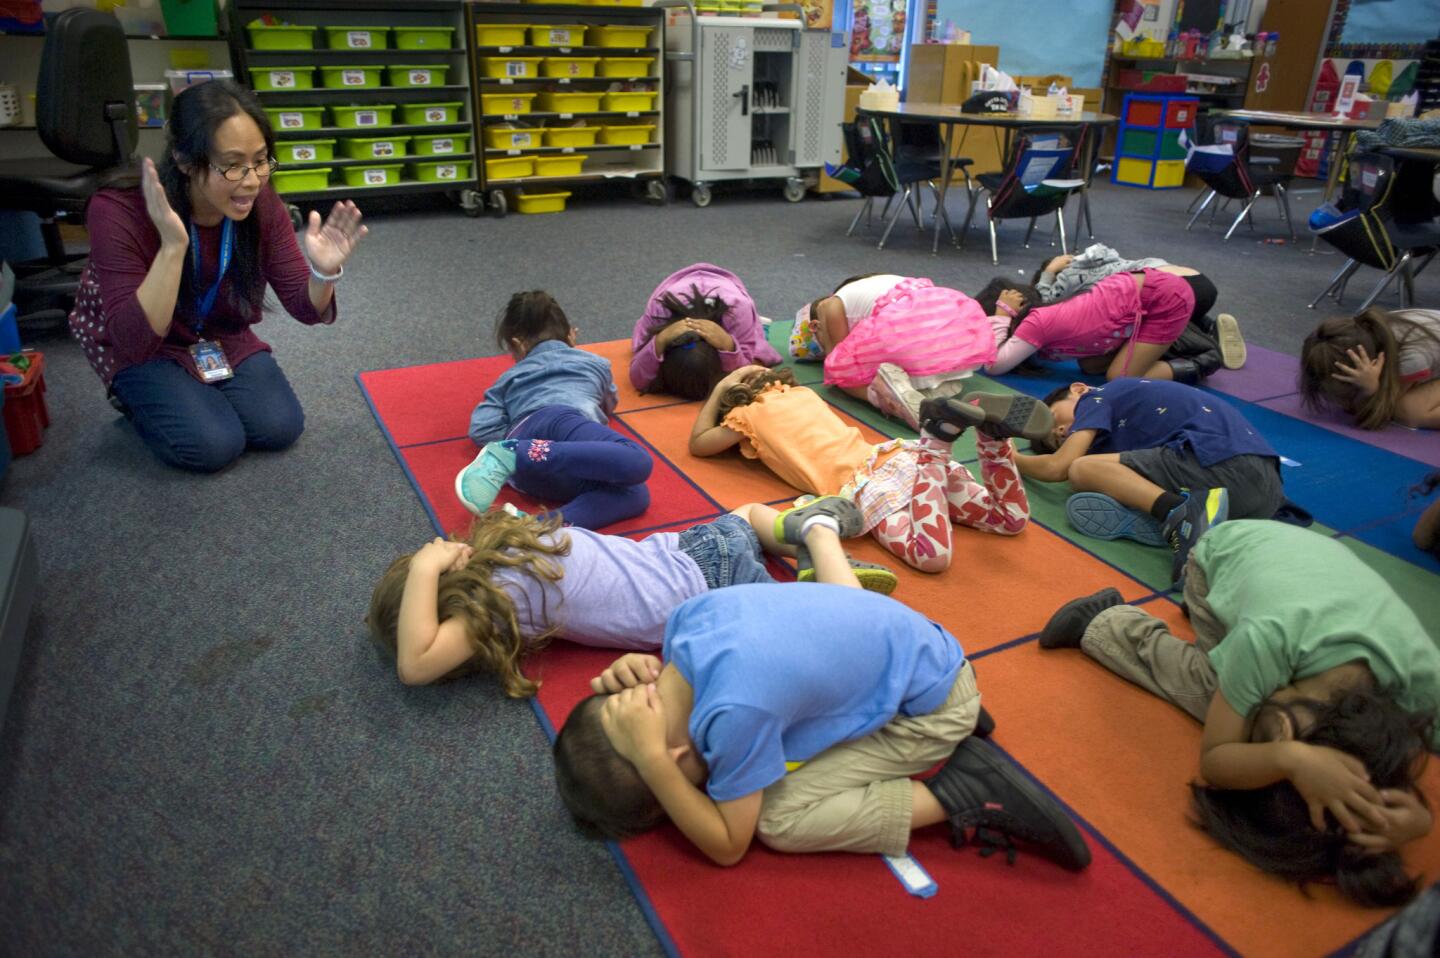 La maestra de preescolar, Cherrylyn Fidel, indica a sus alumnos cómo agacharse y cubrirse en un terremoto, durante el simulacro de sismo llamado "Great ShakeOut" (La Gran Sacudida) en la Escuela Primaria Hickman en San Diego, California.